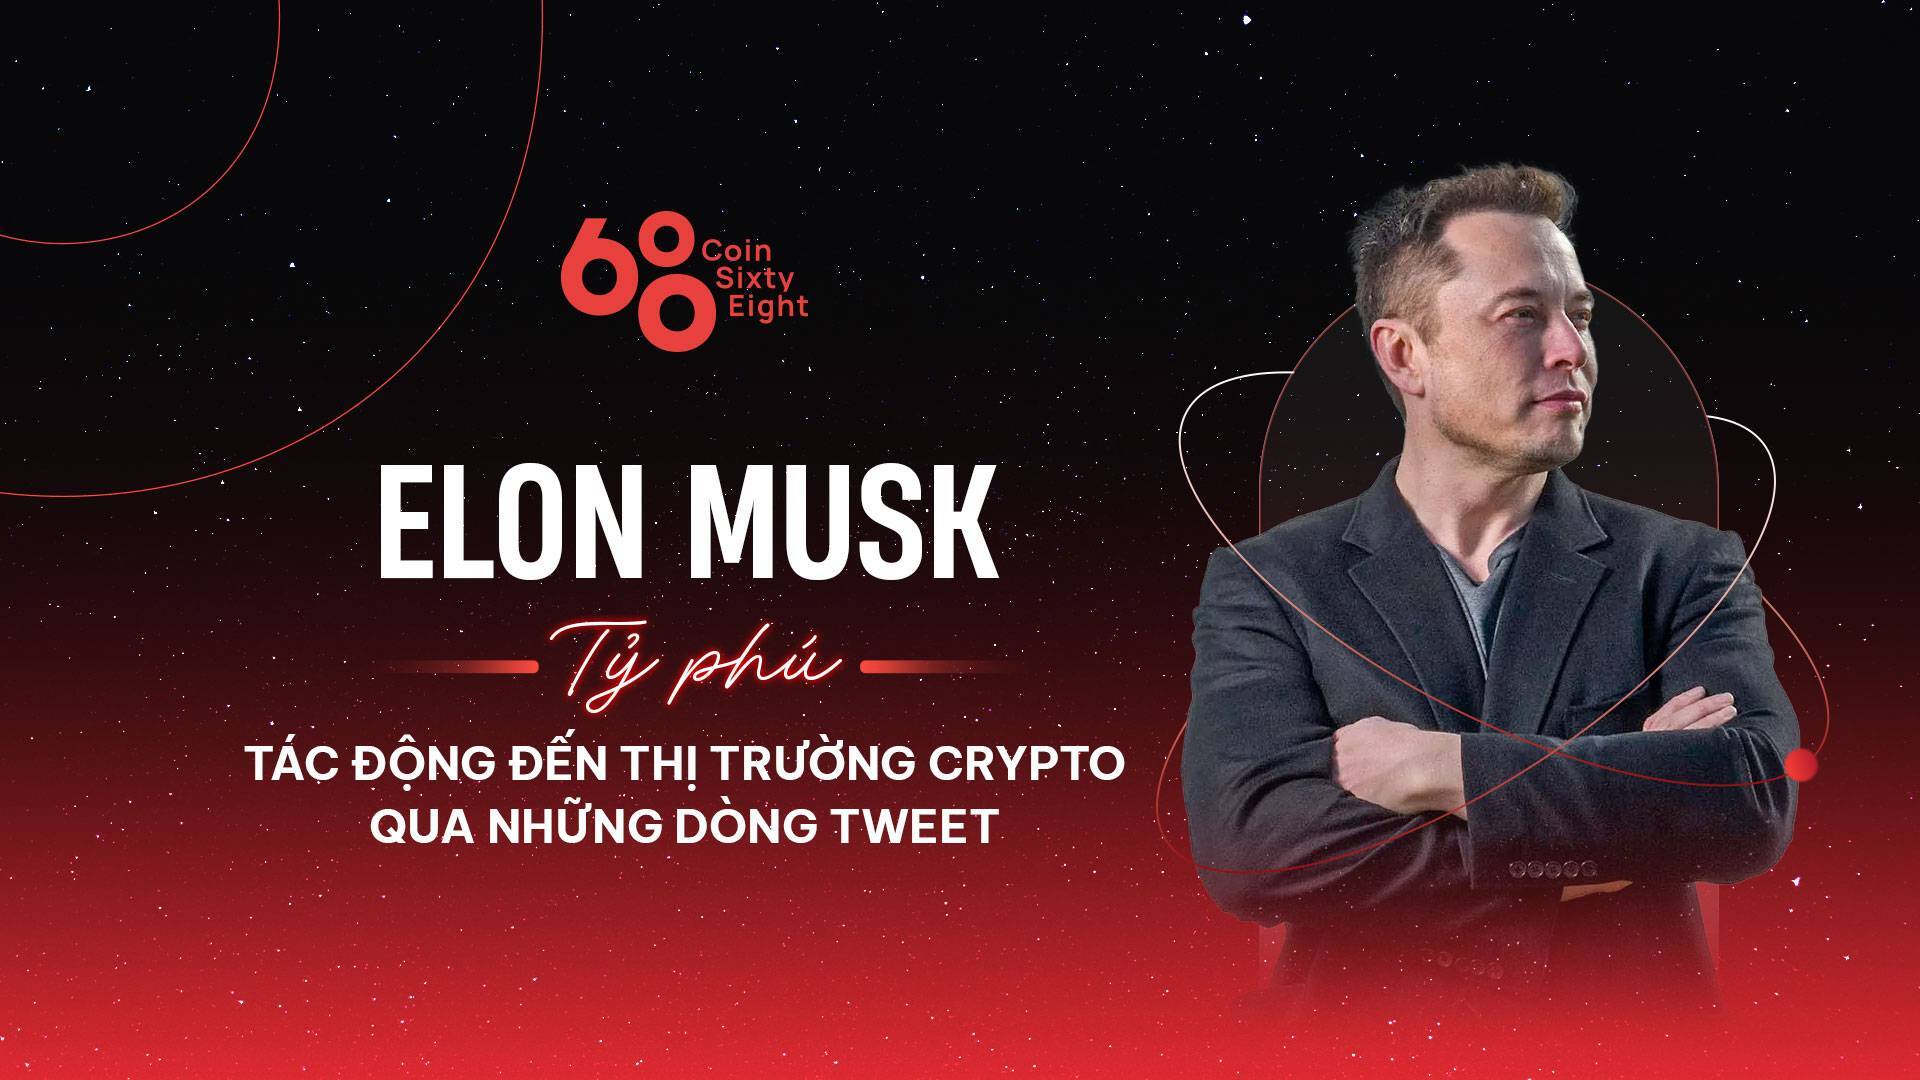 Elon Musk - Tỷ Phú Tác Động Đến Thị Trường Crypto Qua Những Dòng Tweet